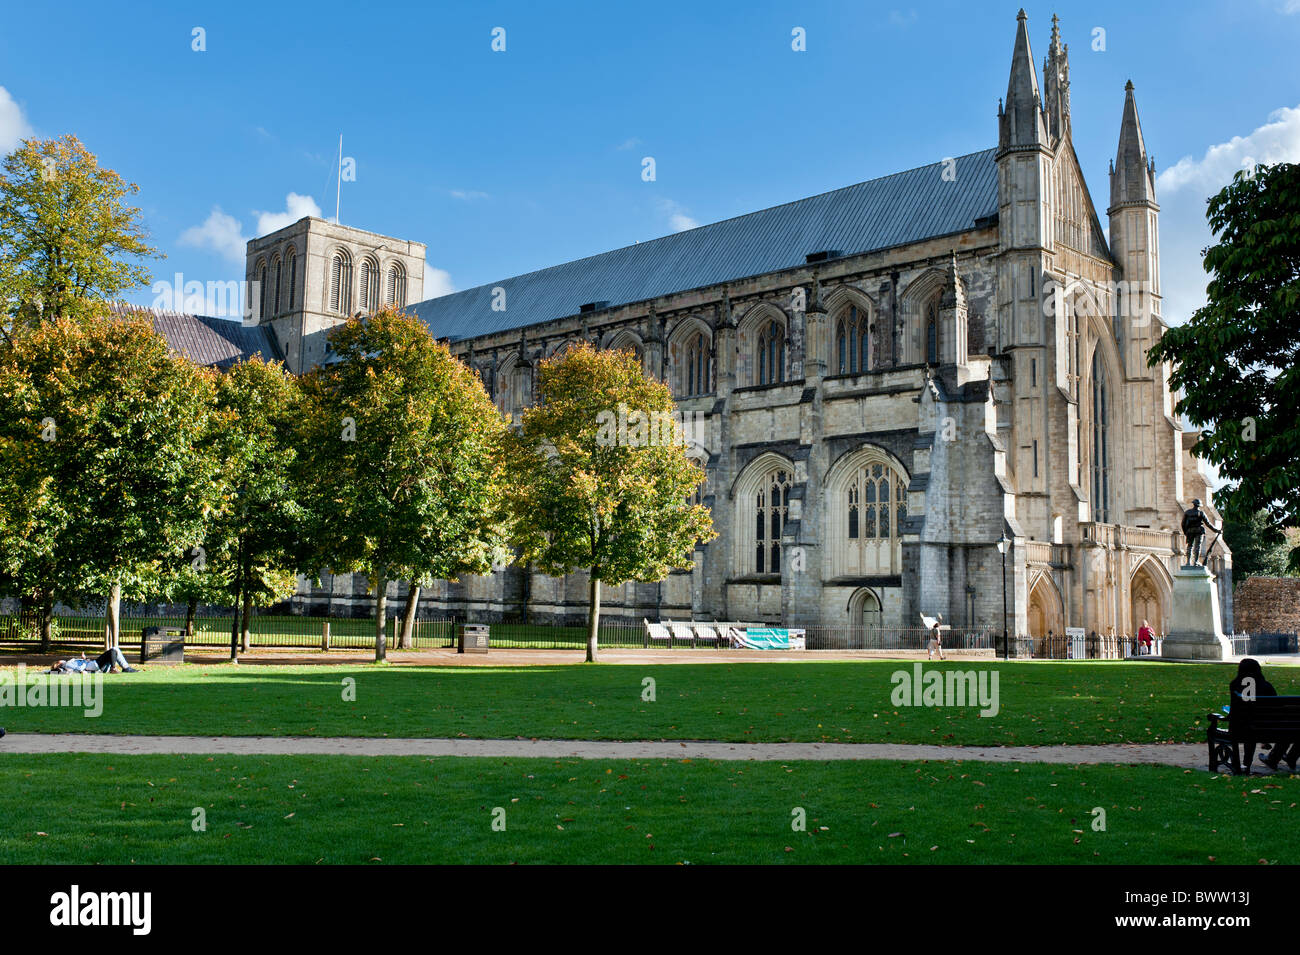 La cathédrale de Winchester vue d'automne Banque D'Images